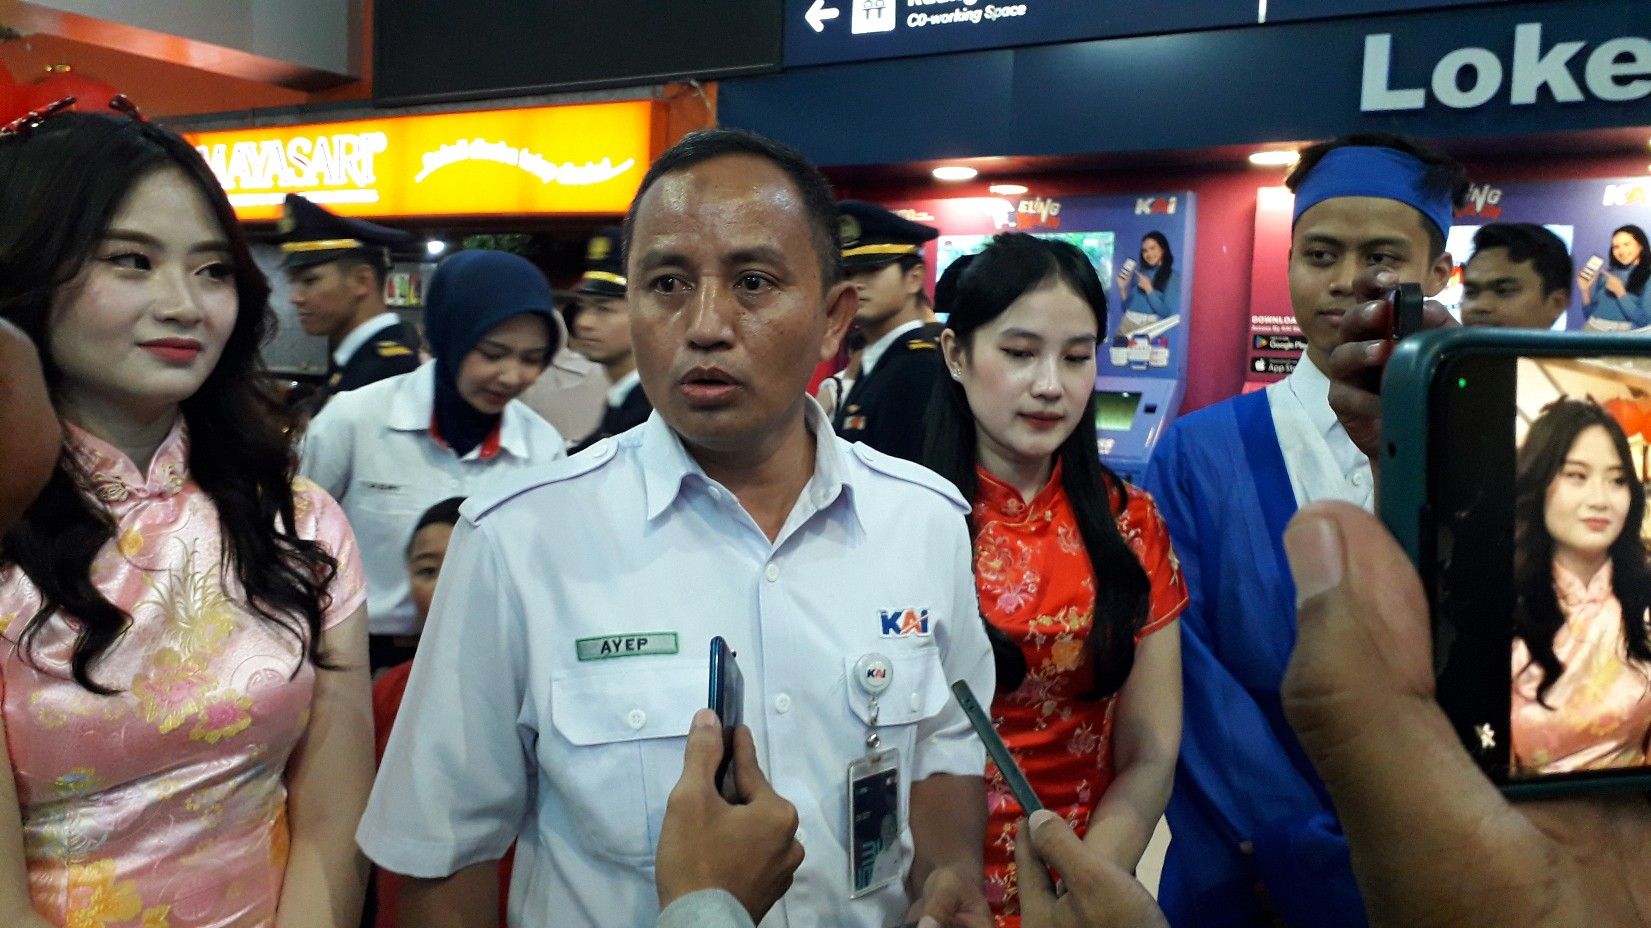 Manager Humas PT KAI Daop 2, Ayep Hanapi mengatakan untuk meriahkan Tahun Baru Imlek, Daop 2 Bandung mengadakan festival barongsai,  bagi-bagi Angpao hingga jeruk gratis bagi penumpang KA